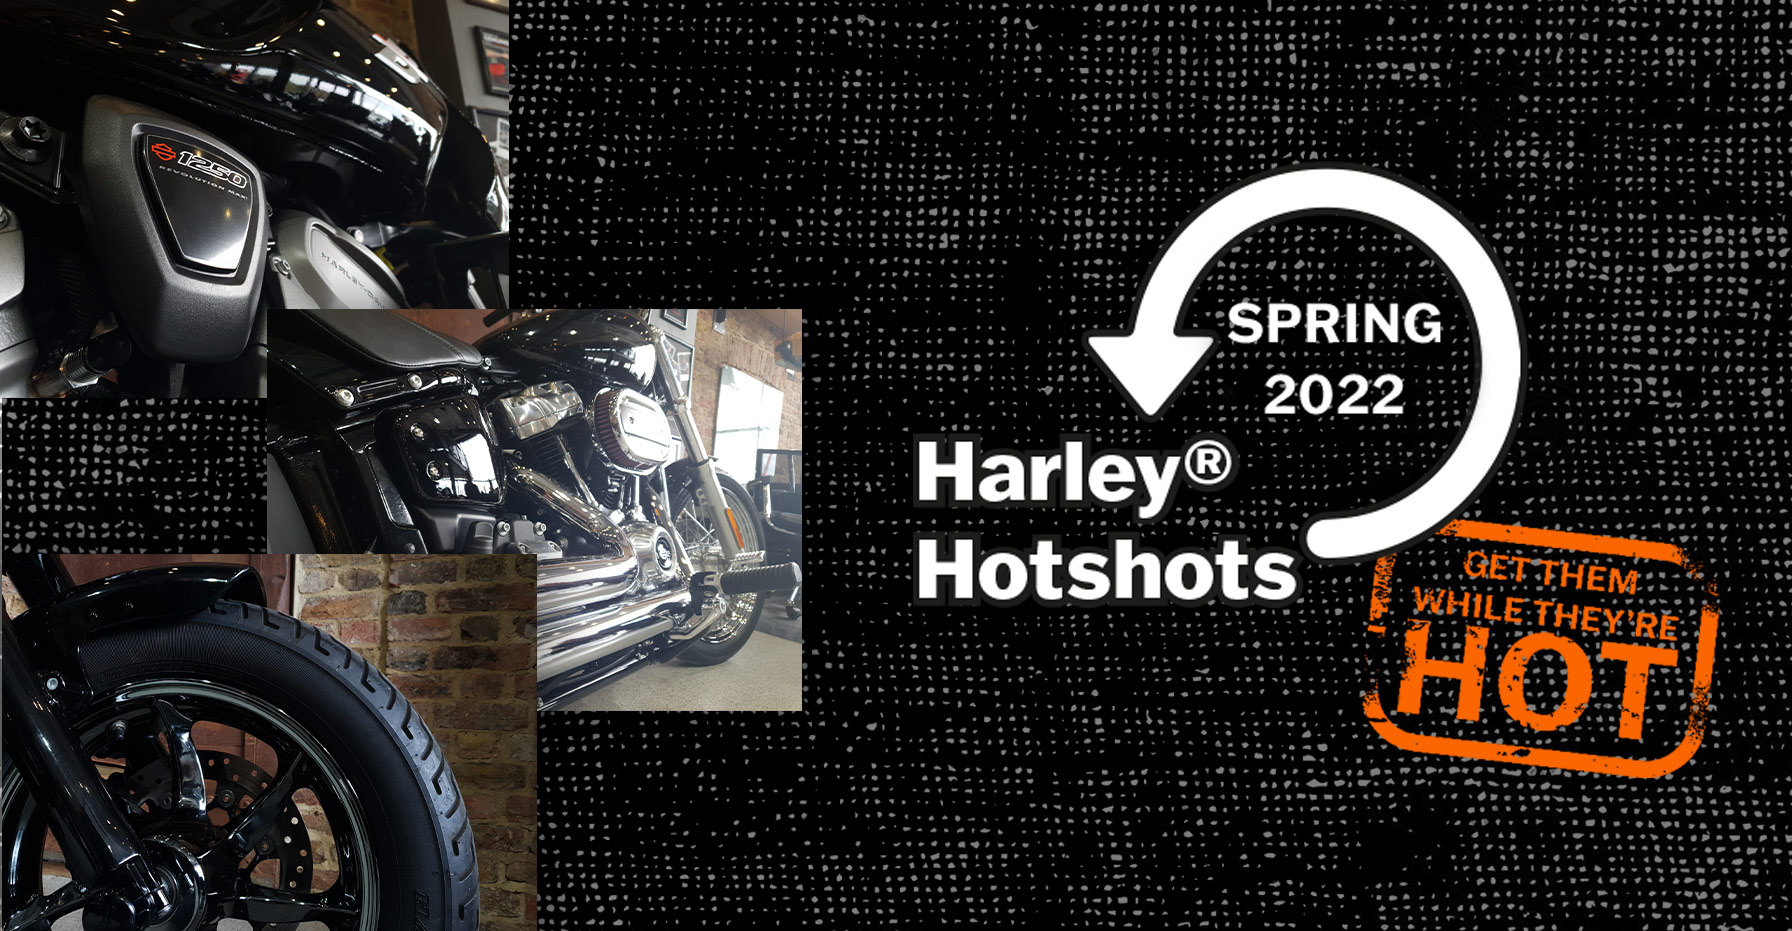 Harley-Davidson Harley Hotshots - 30 Days Deal Offer Sale